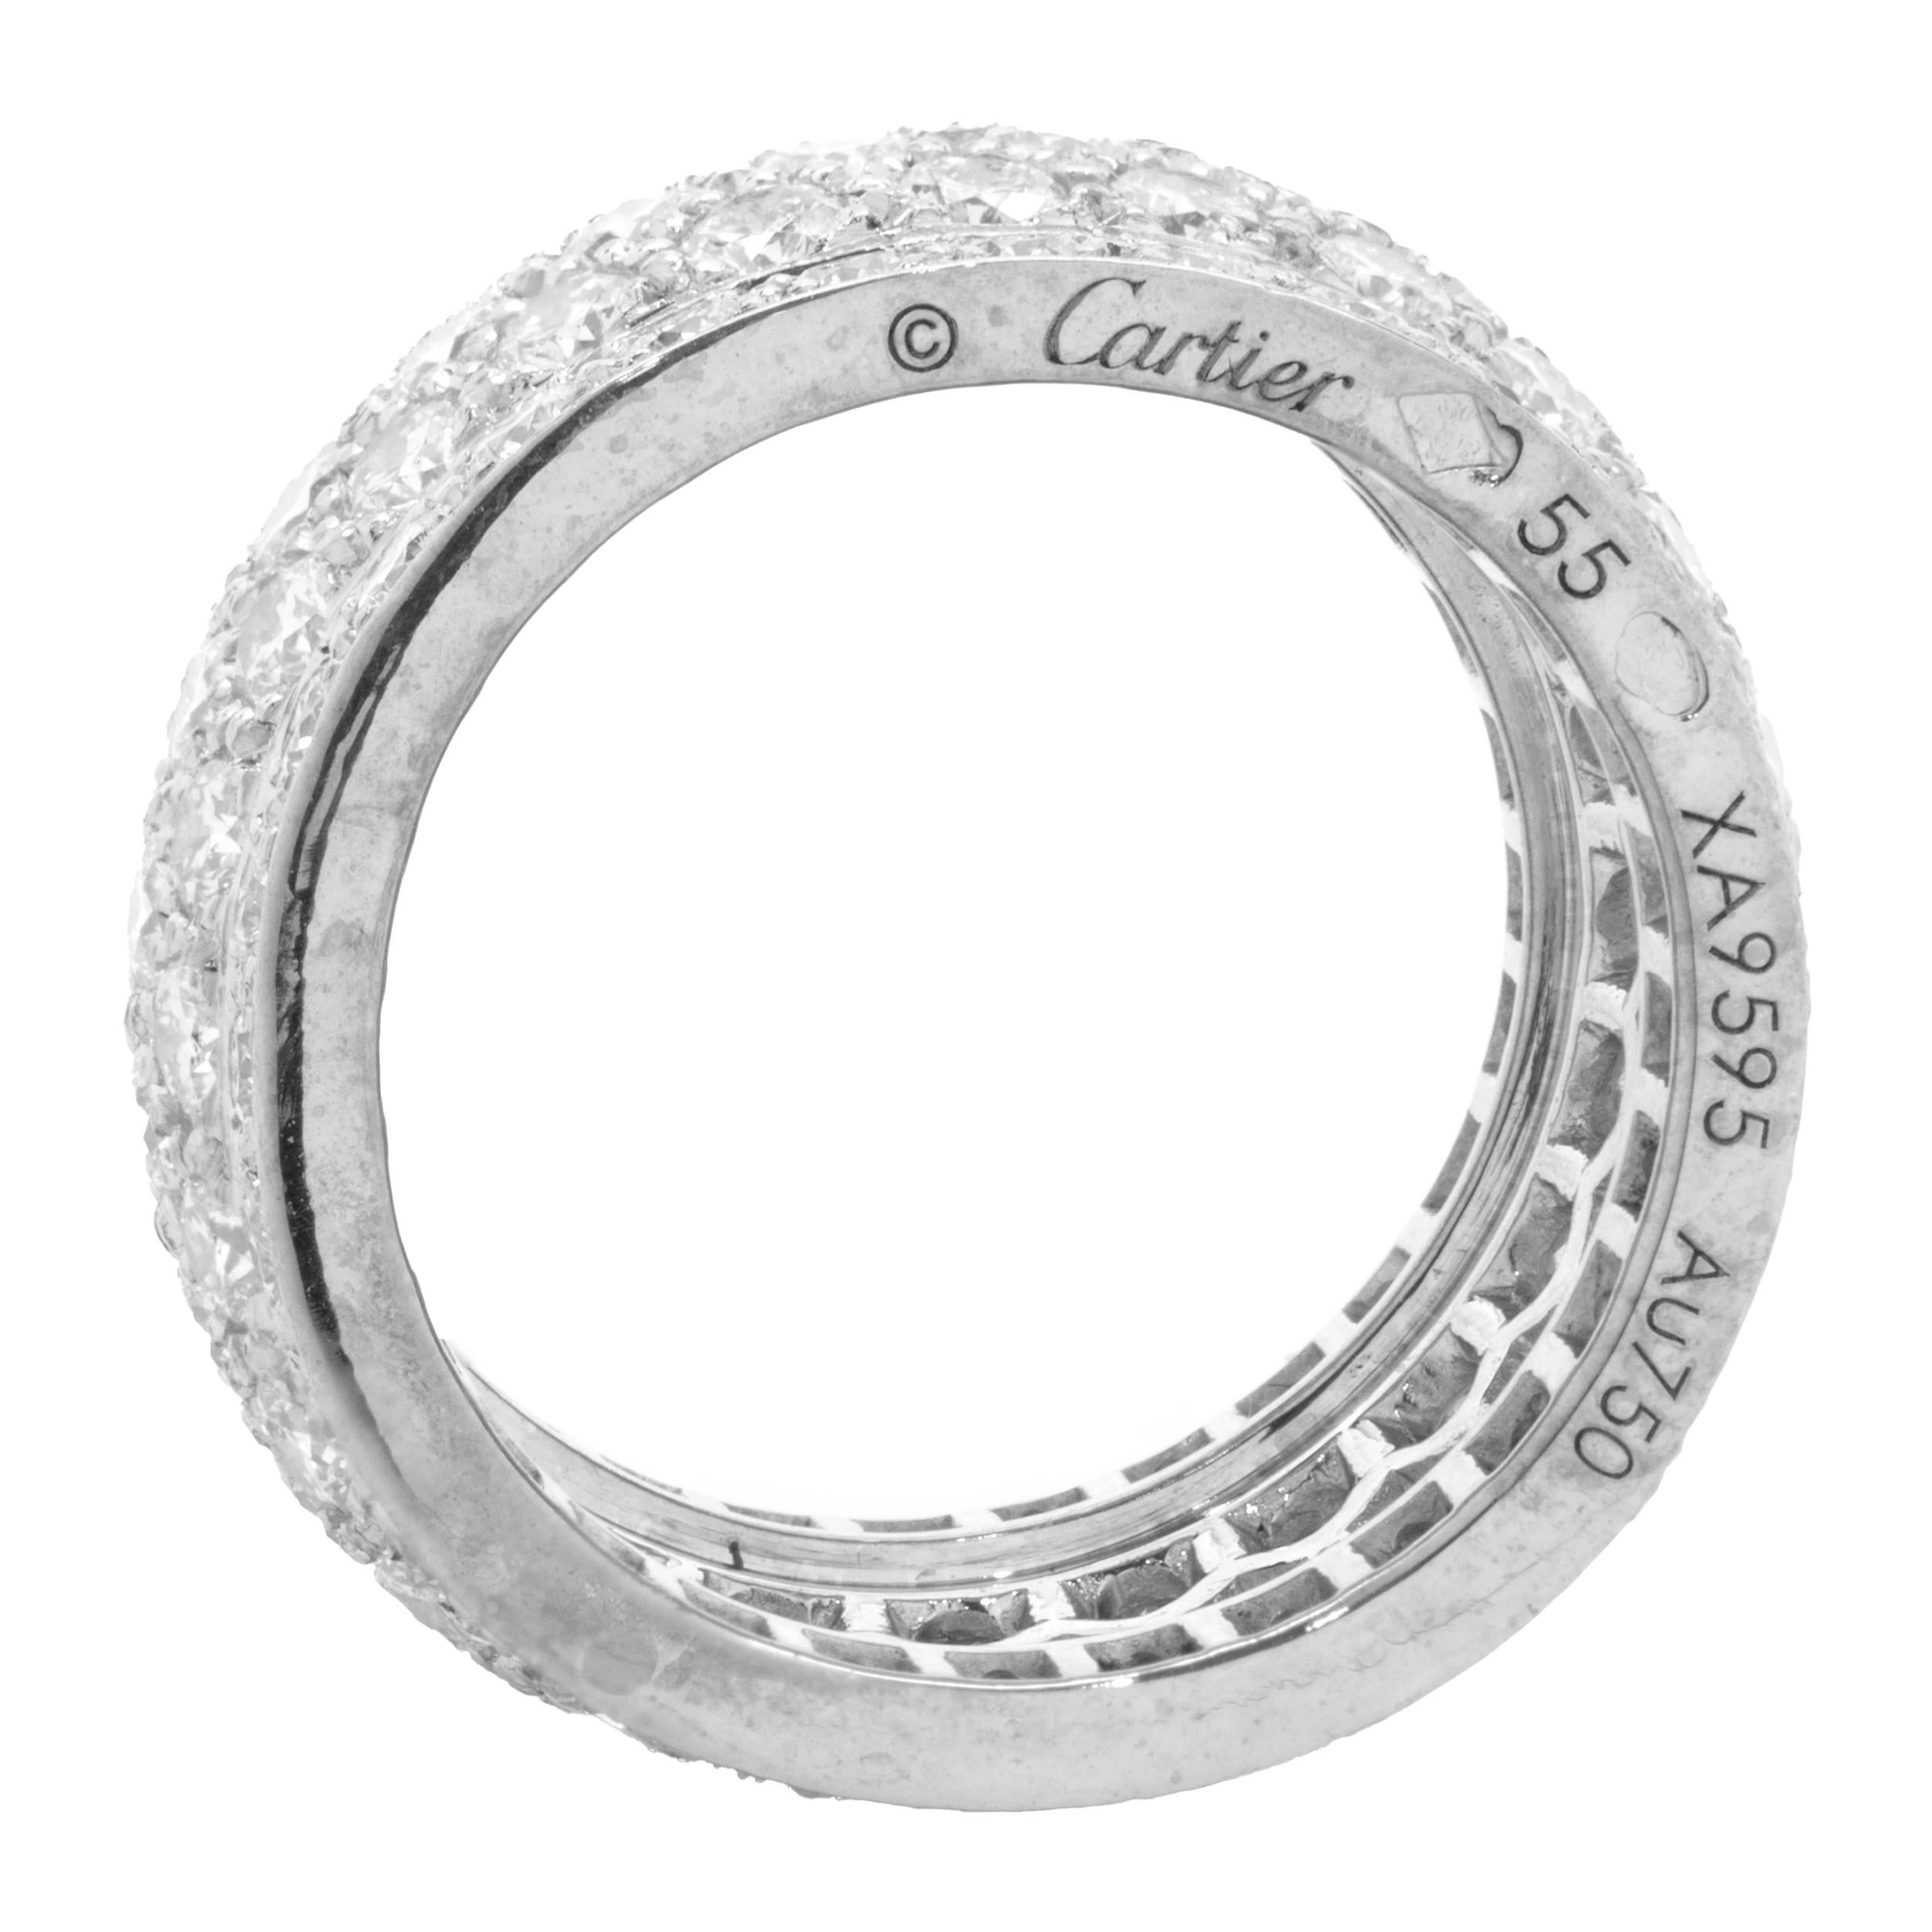 Créateur : Cartier
Matériau : Or blanc 18K
Diamant : 128 diamants ronds de taille brillant = 6,50cttw
Couleur : F
Clarté : VVS1
Numéro de série XA9XXX
Taille : 7.25
Poids : 12,06 grammes

Pas de boîte ni de papiers inclus
Garantie d'authenticité par